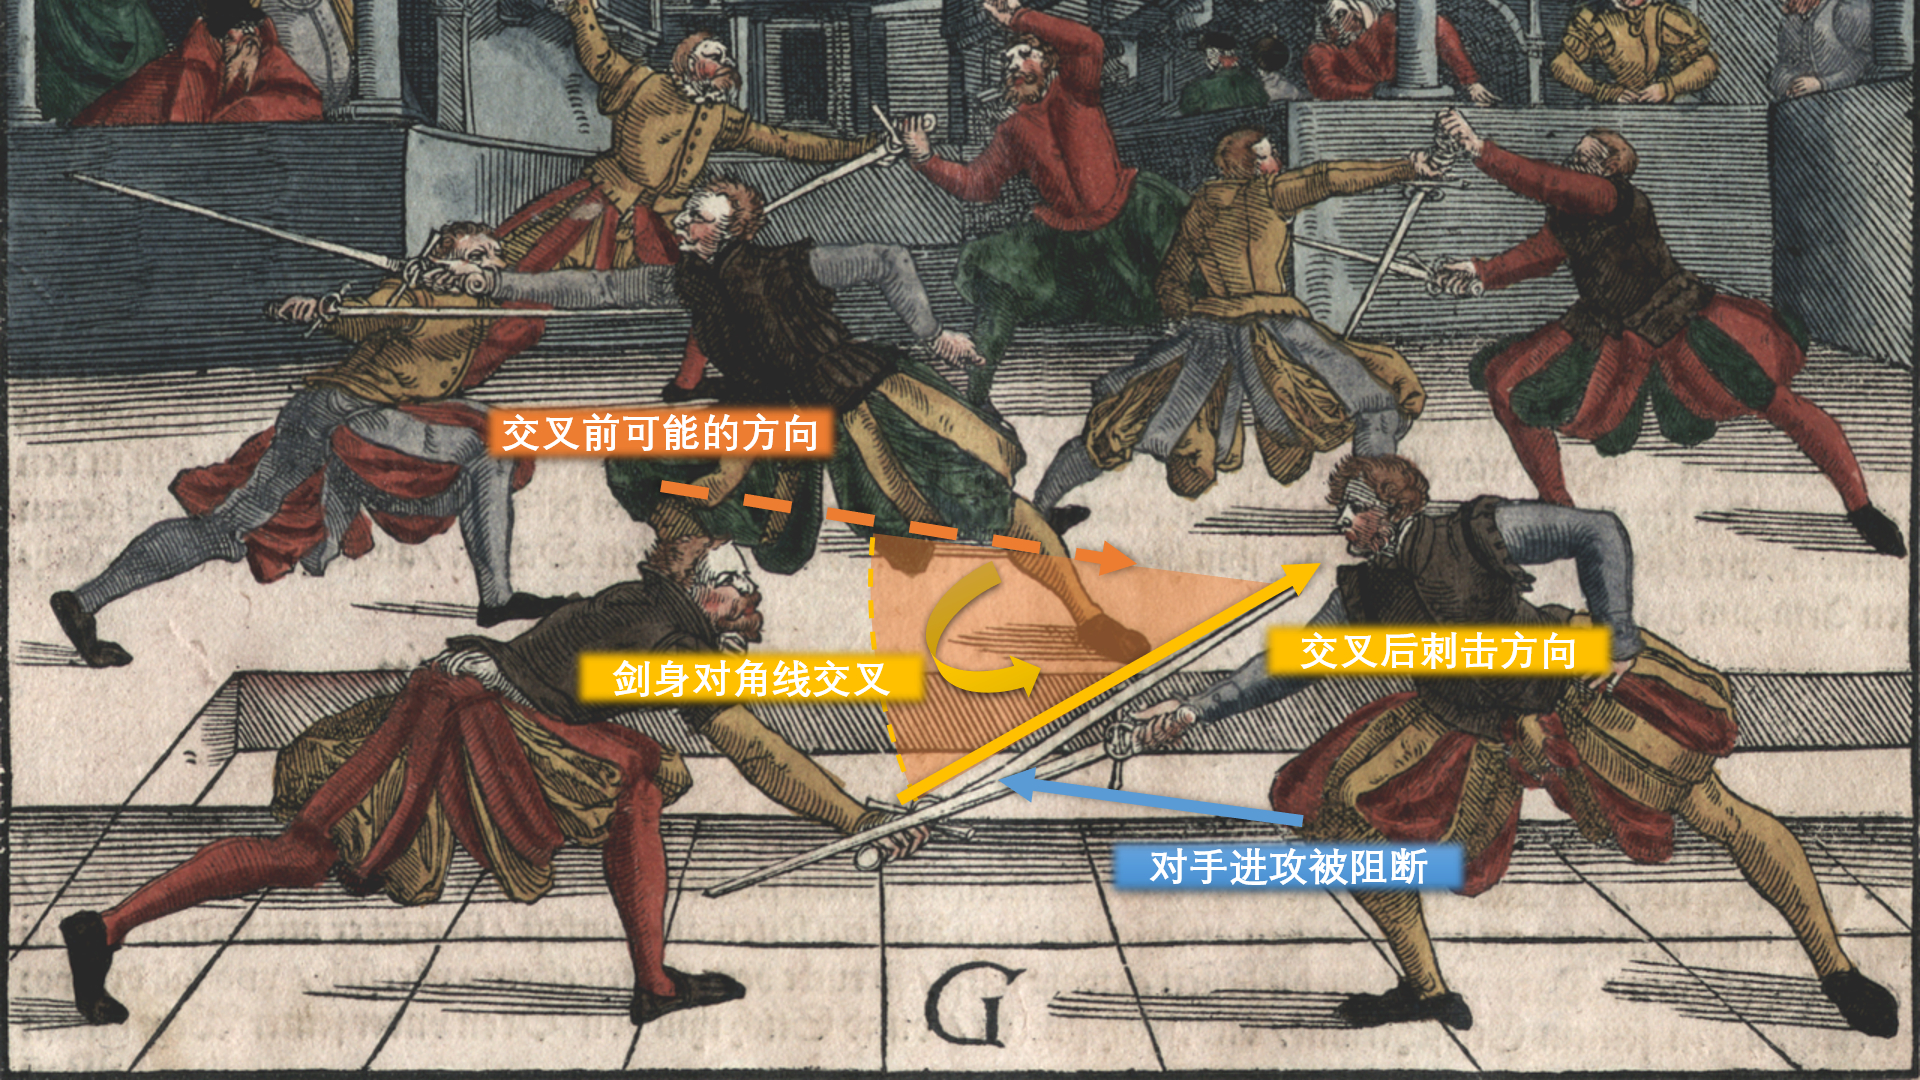 圖中左側的劍士很可能在發動刺擊後將劍身交叉到下方，在阻斷對手武器的同時實現了成功刺擊